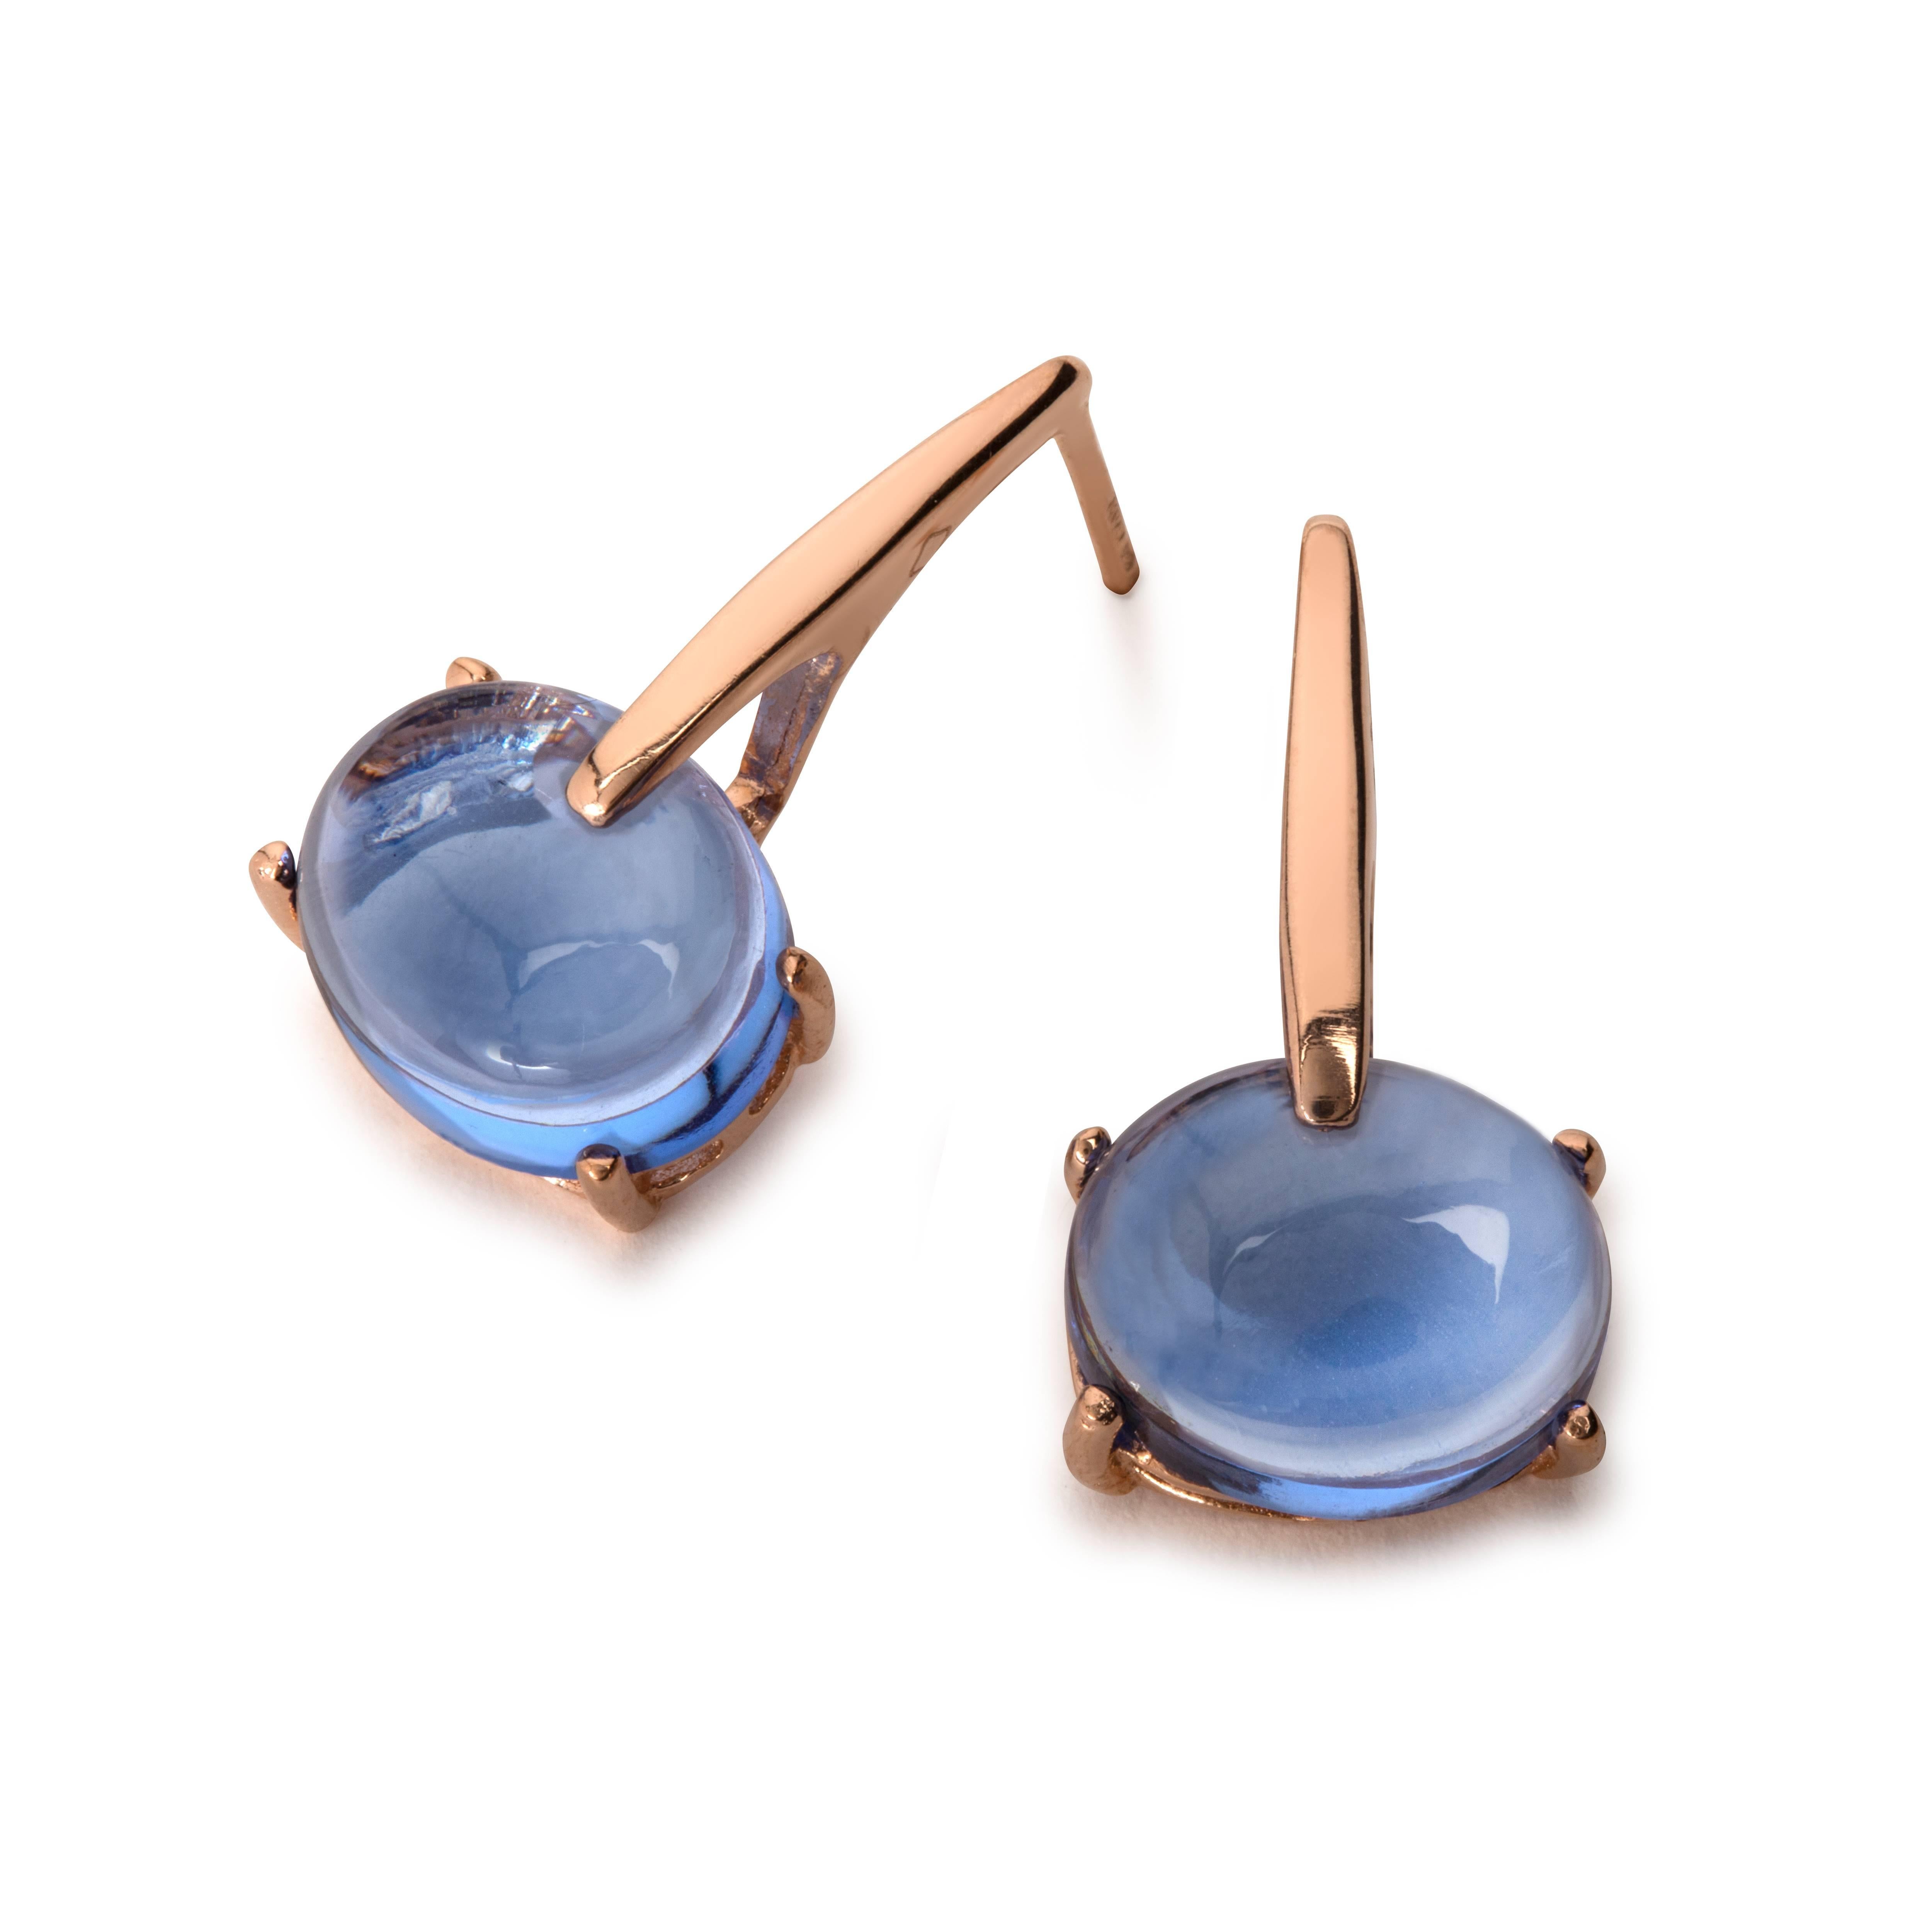 MAVIADA' s 18 Karat Gold London Blue Vermeil Quartz, Sardinia Drop Long Earrings 5